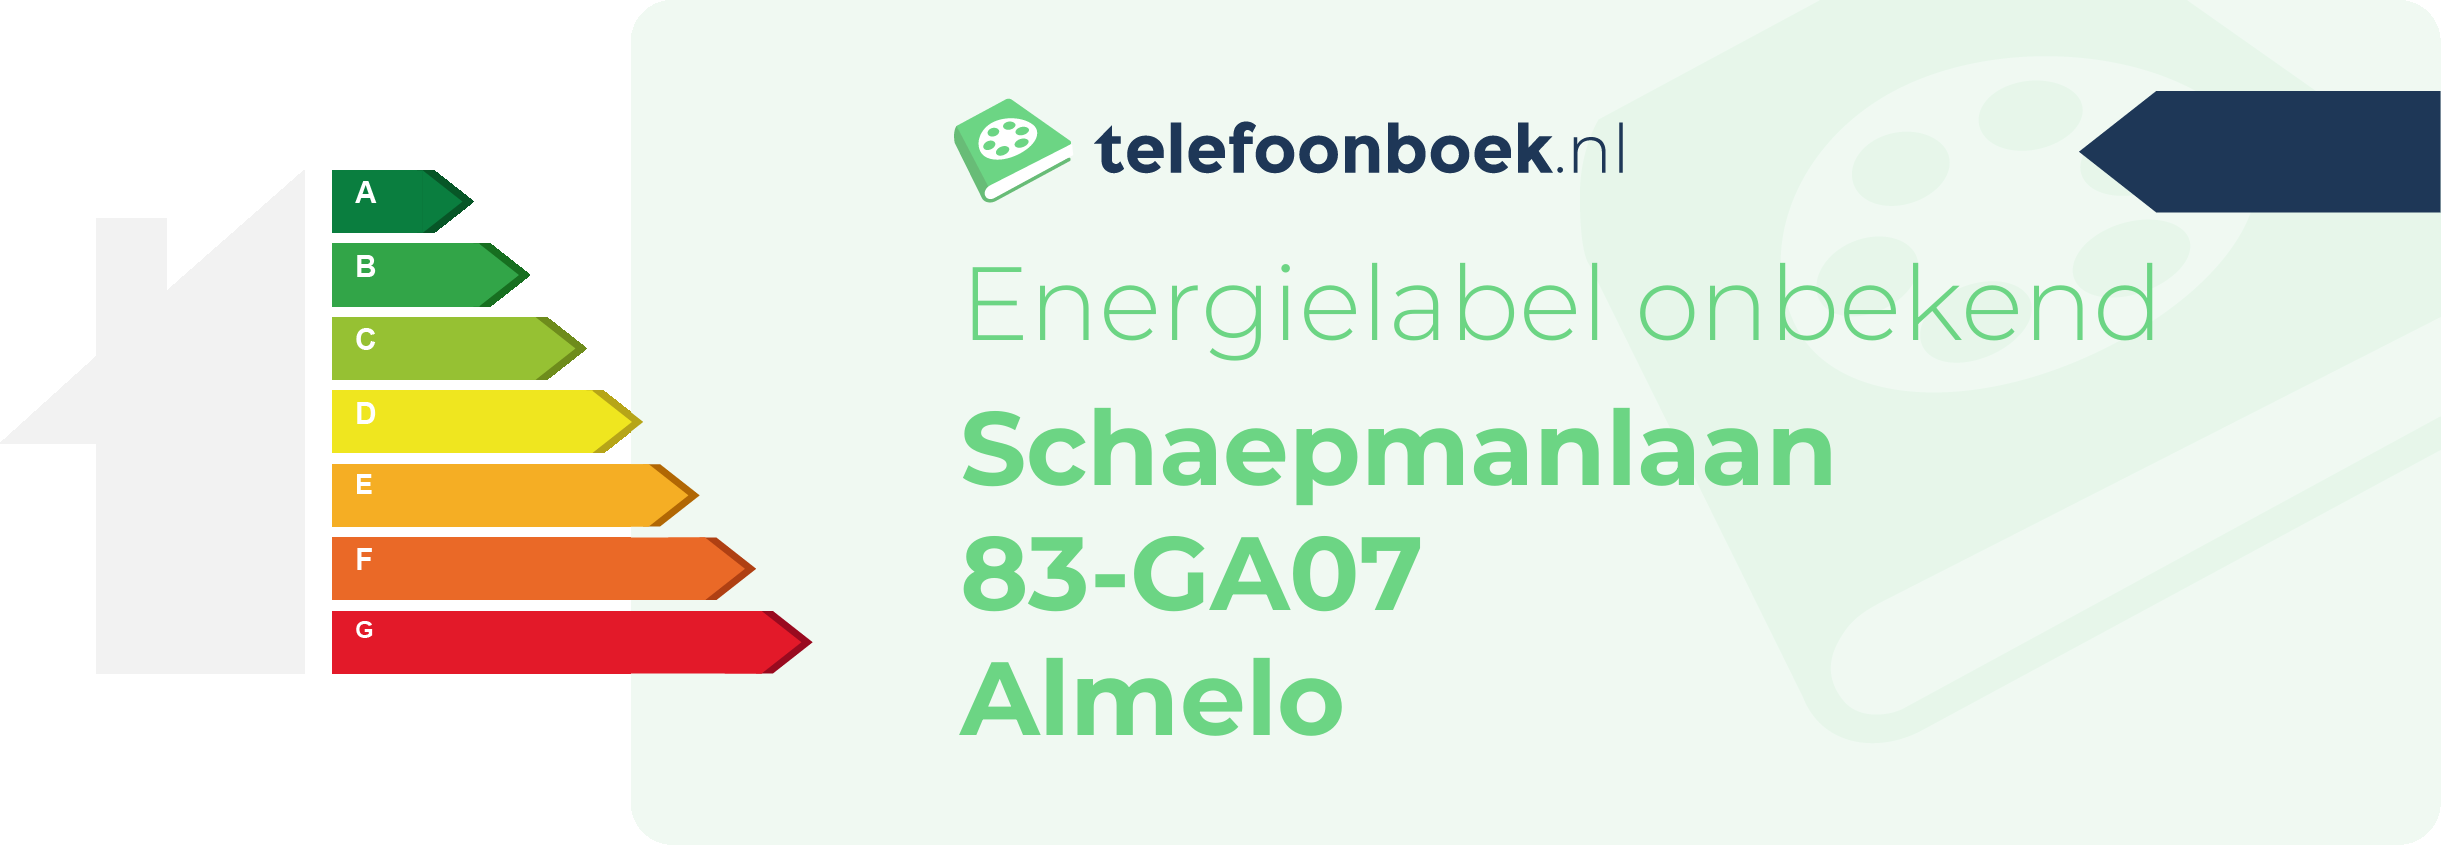 Energielabel Schaepmanlaan 83-GA07 Almelo